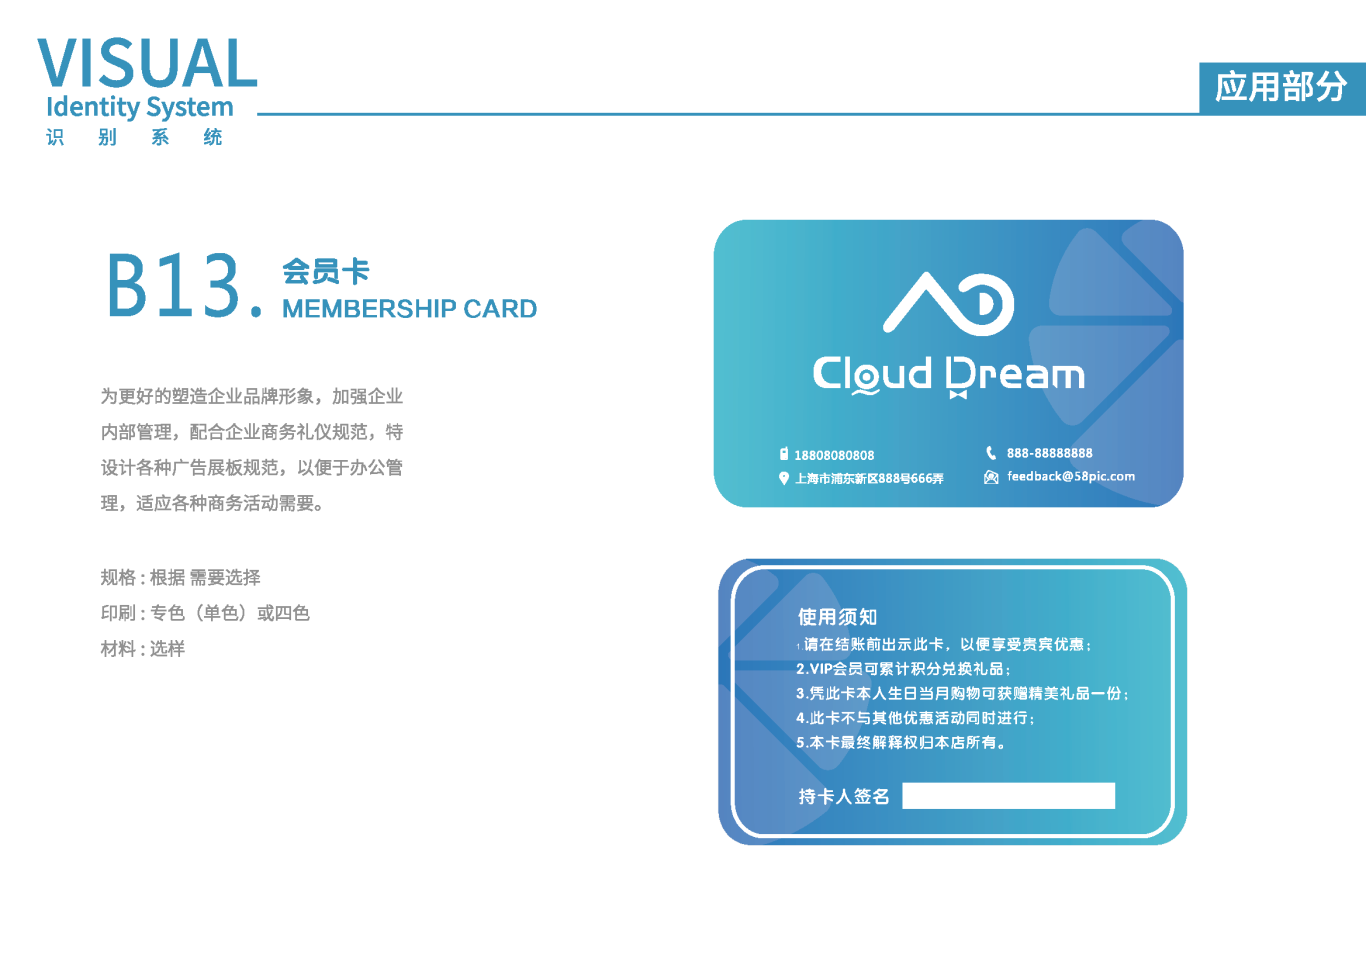 Cloud DreamVIS視覺識別系統手冊圖23